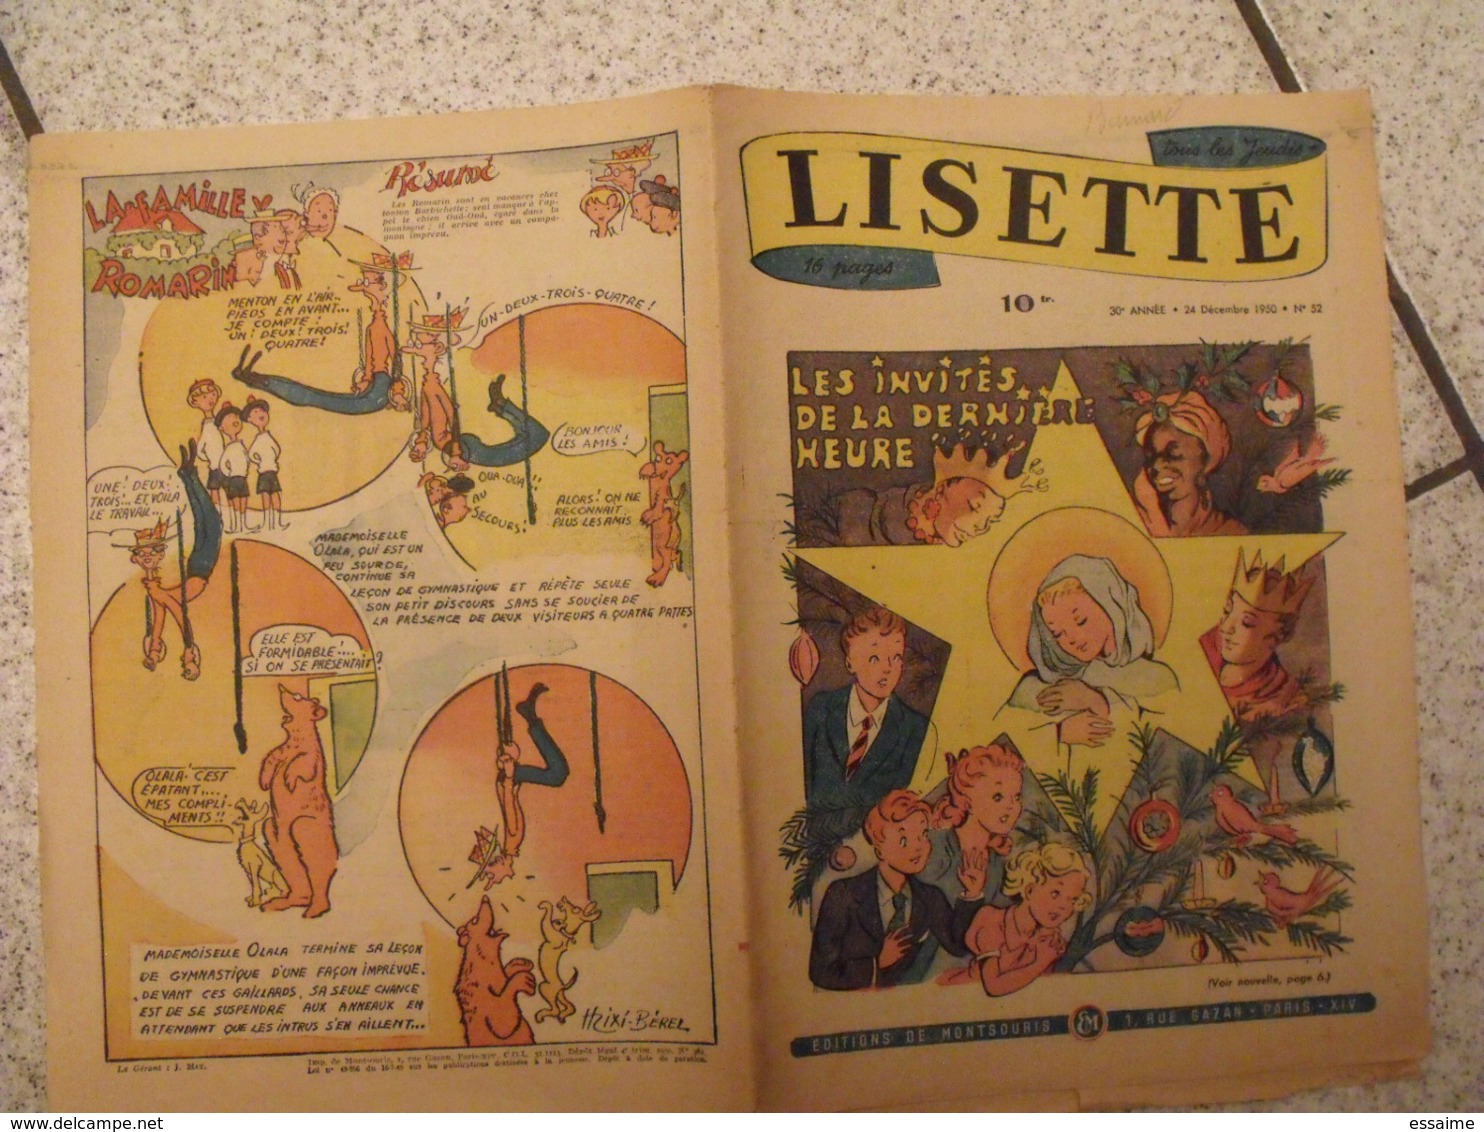 Lisette. 30 n° 1947-50. revue pour fillette. mixi-berel, pinchon (pitchoune), rob-vel, monnier bussemey à redécouvrir